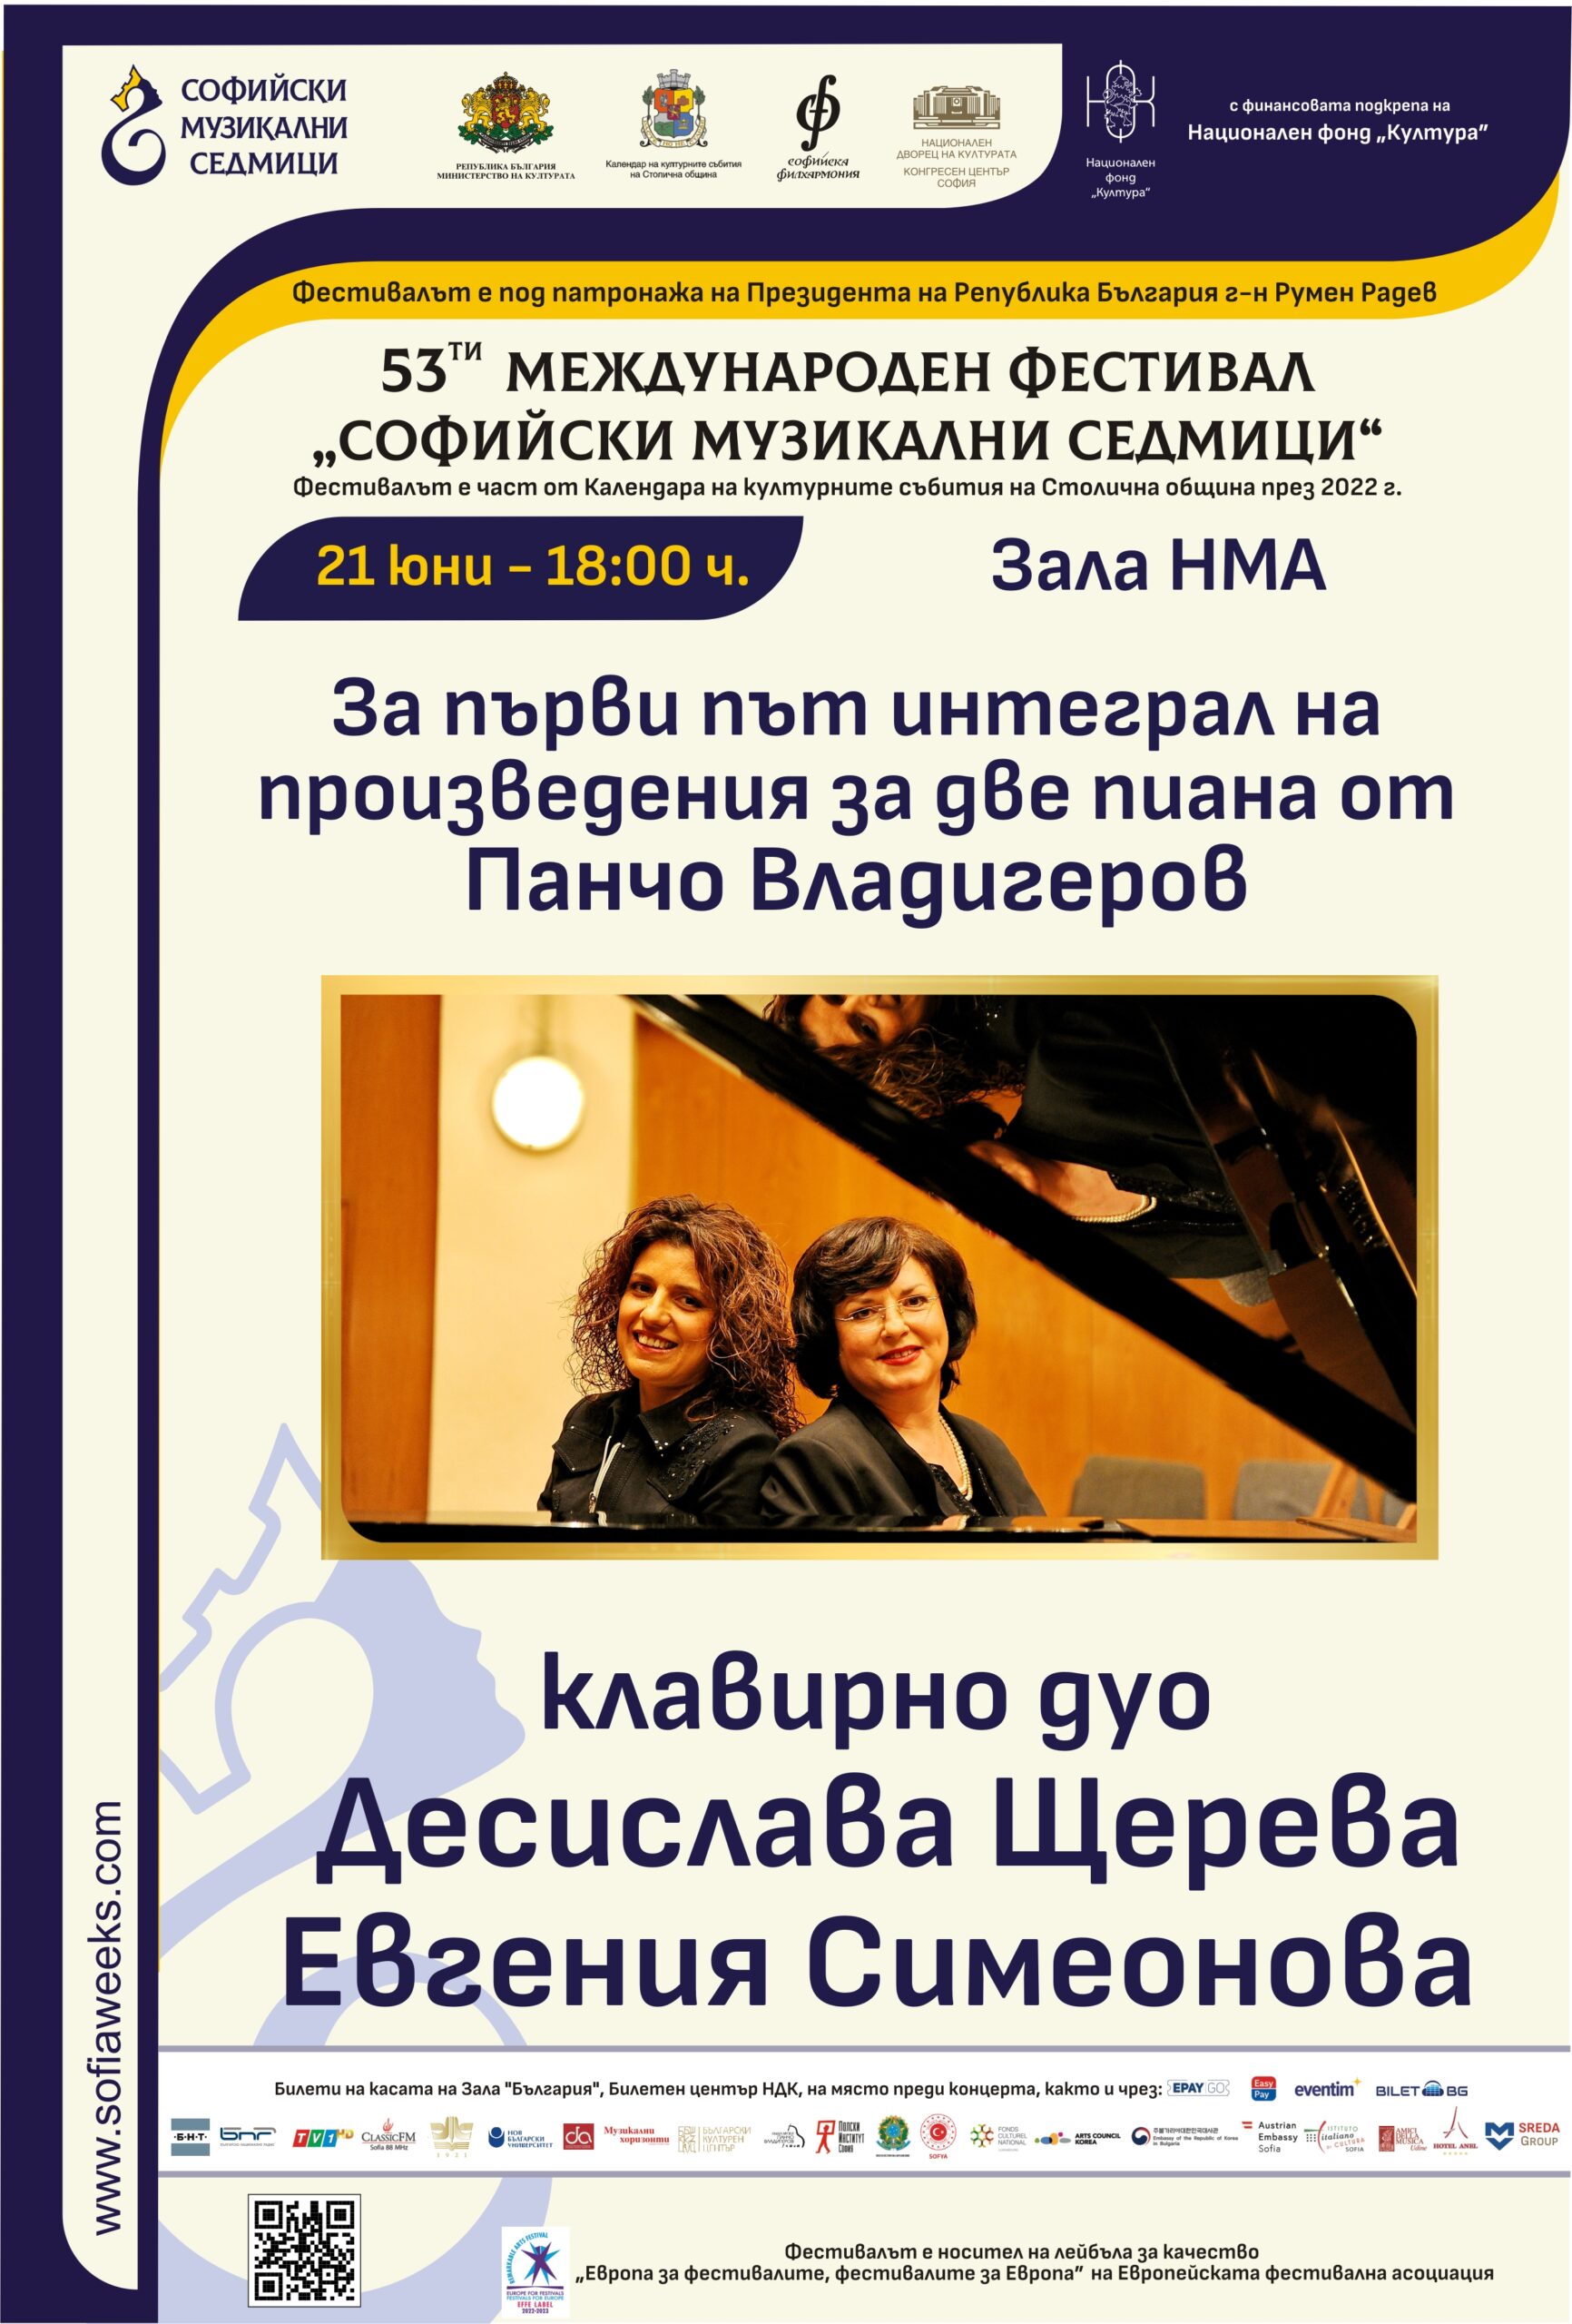 За първи път интеграл на произведения за две пиана от Панчо Владигеров